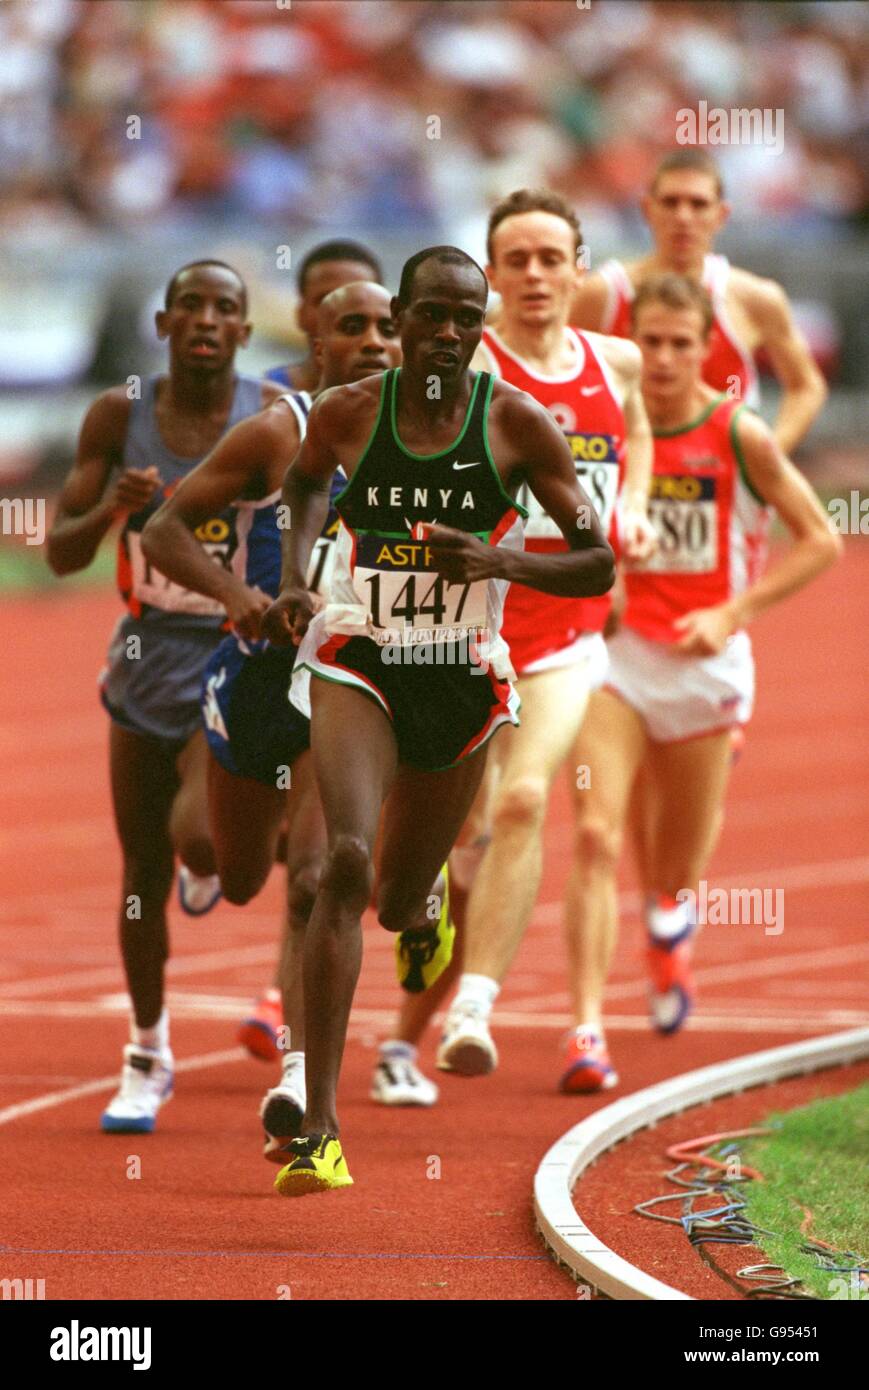 Atletica - 16° Giochi del Commonwealth - Kuala Lumpur, Malesia - Semifinale maschile da 1500 m. John Kibowen del Kenya guida il gruppo Foto Stock